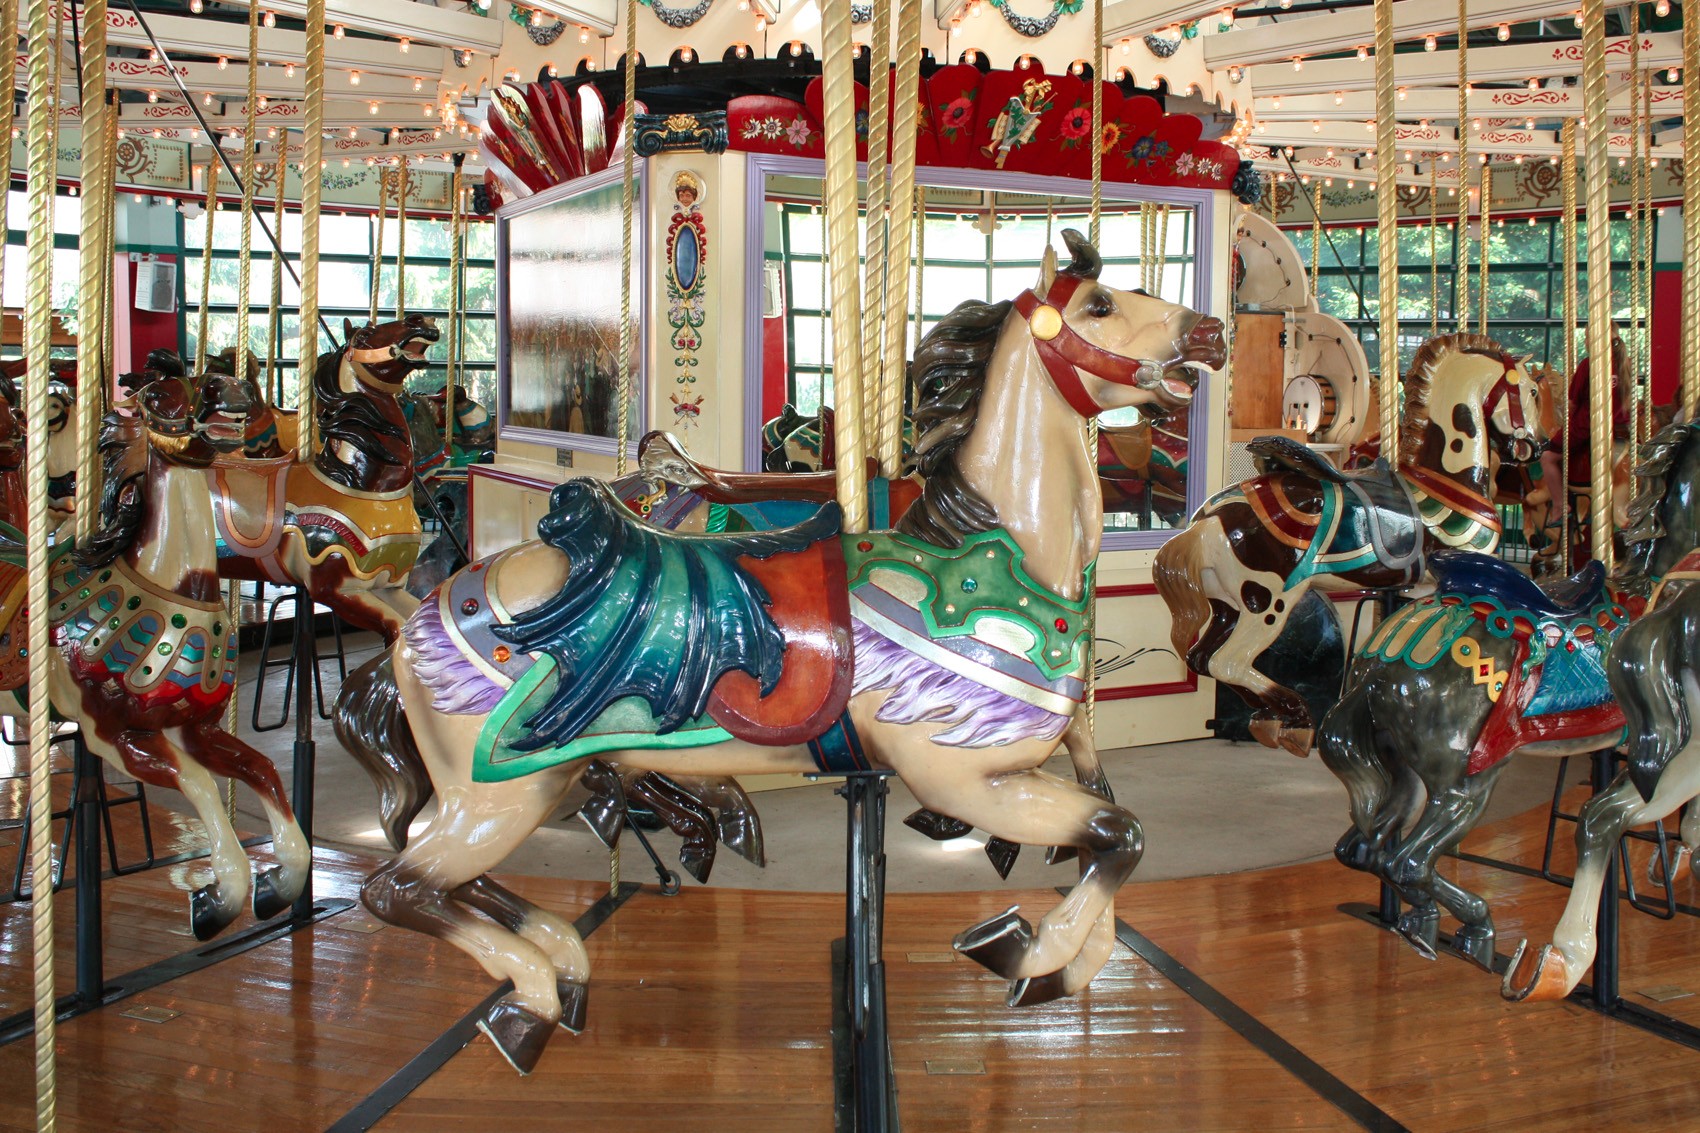 1914-Mangels-Illions-Columbus-Zoo-carousel-horses-bat-wing-saddle